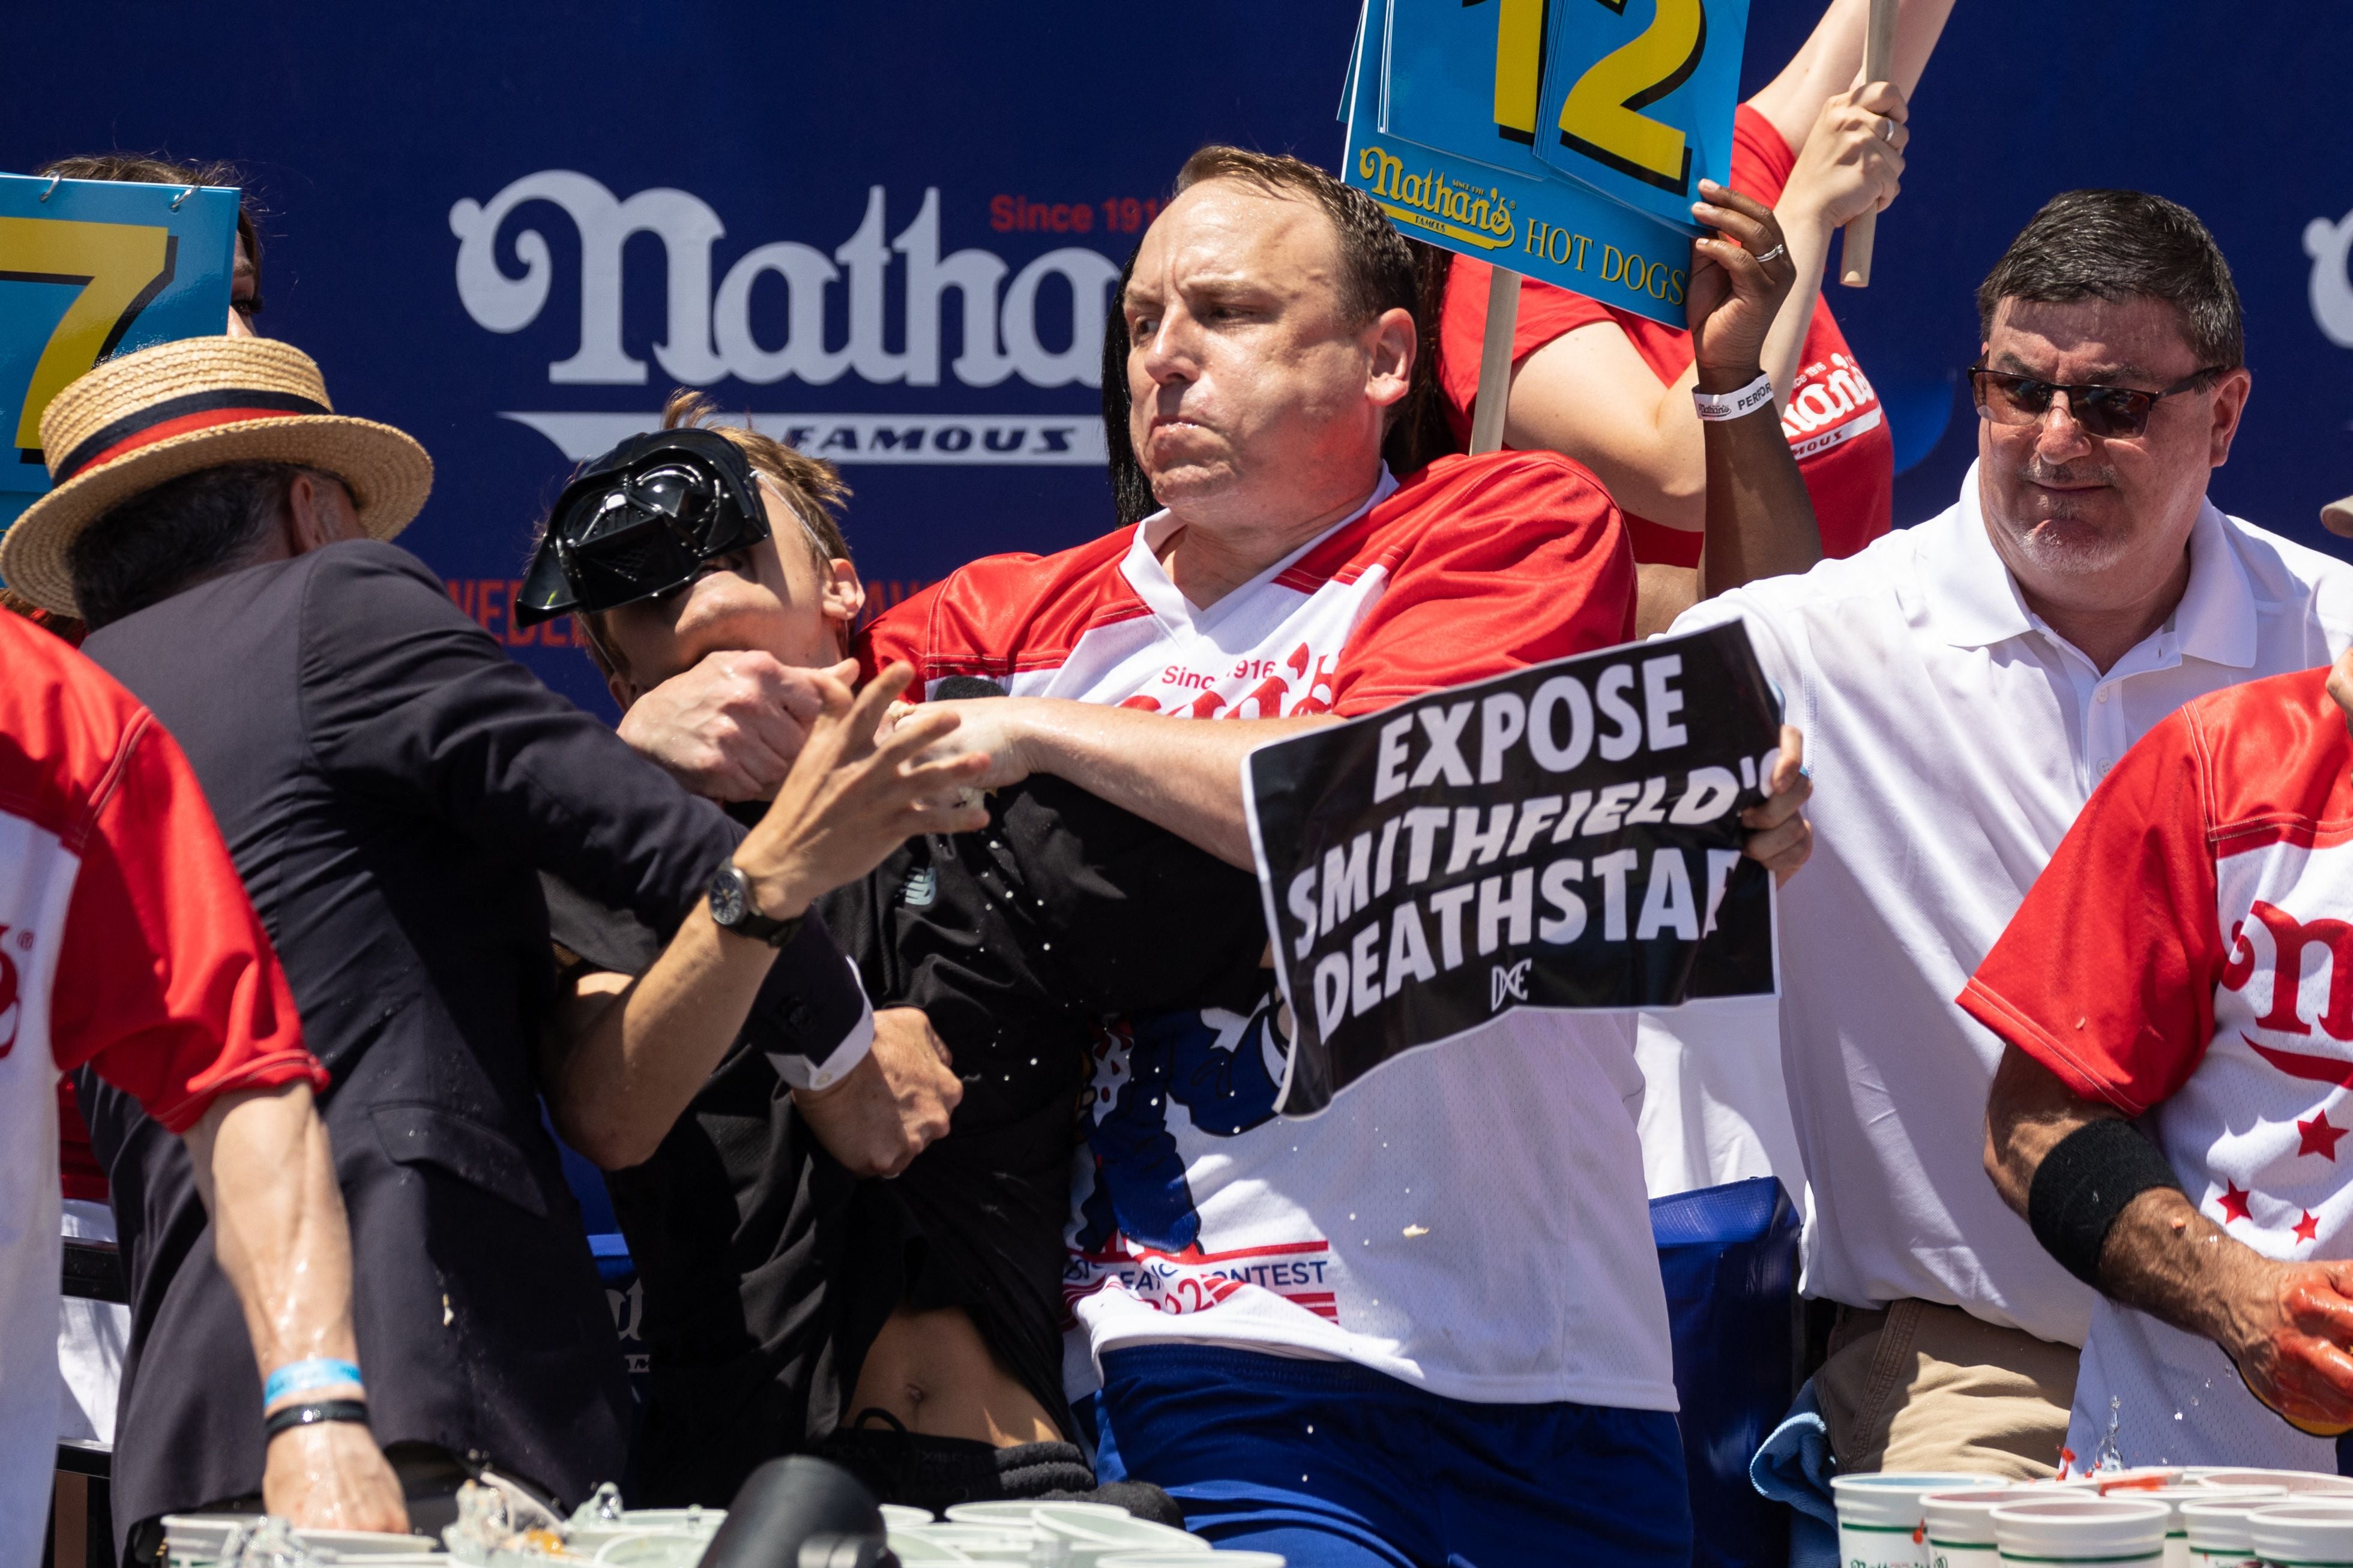 Joey Chestnut derriba a un manifestante que interrumpió la competición durante el Concurso Internacional de Hot Dogs de Nathan’s Famous del 4 de julio en Coney Island en Nueva York